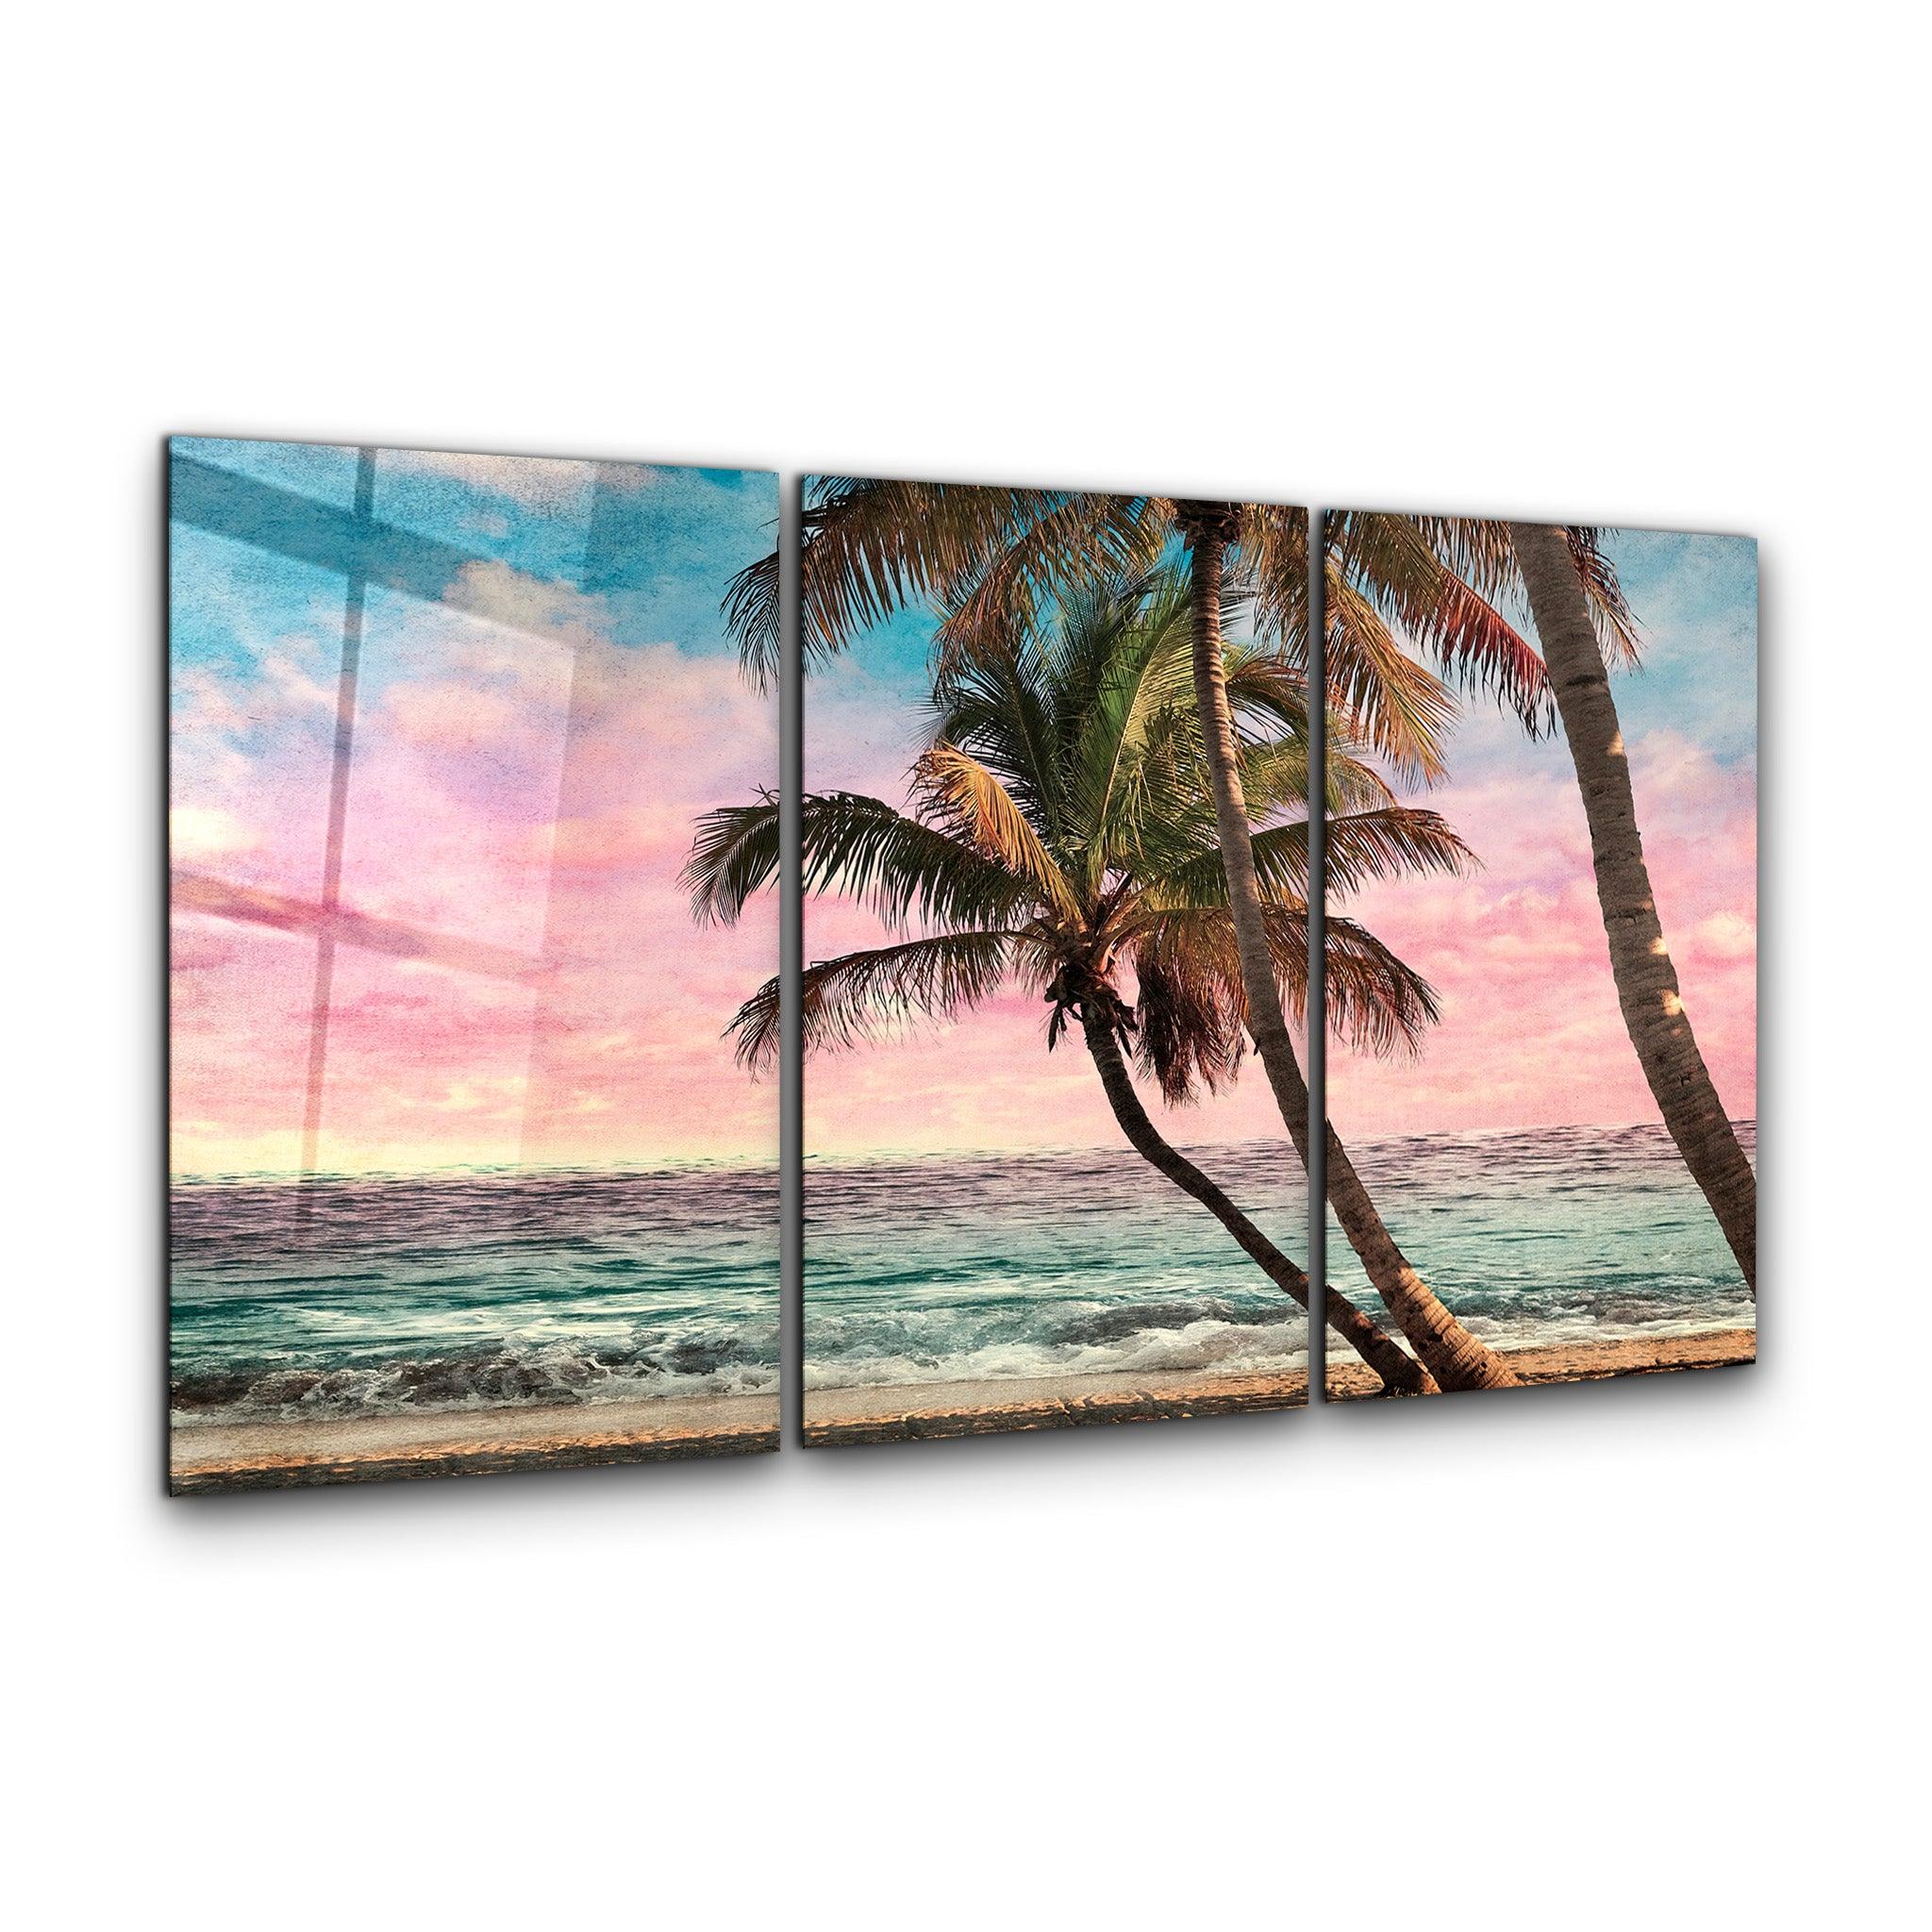 ・"Palm Beach Retro Filter - Trio"・Glass Wall Art - ArtDesigna Glass Printing Wall Art